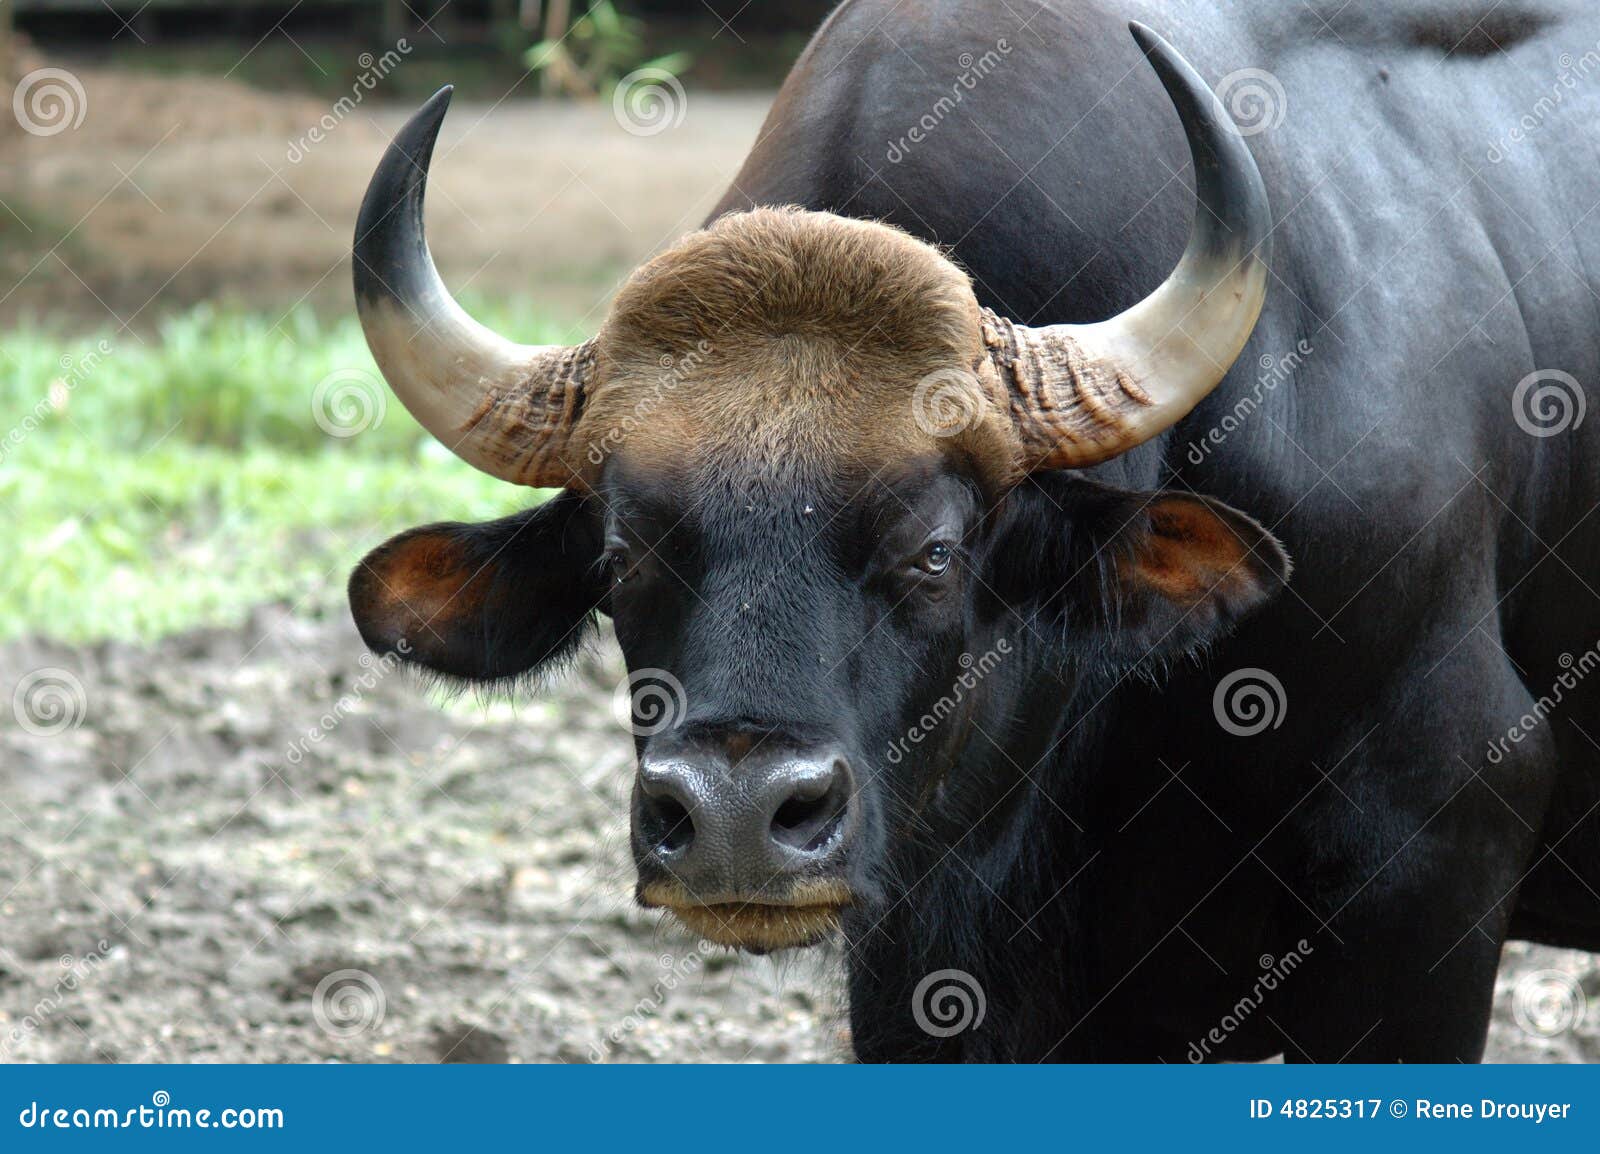 malaysia, penang: gaur